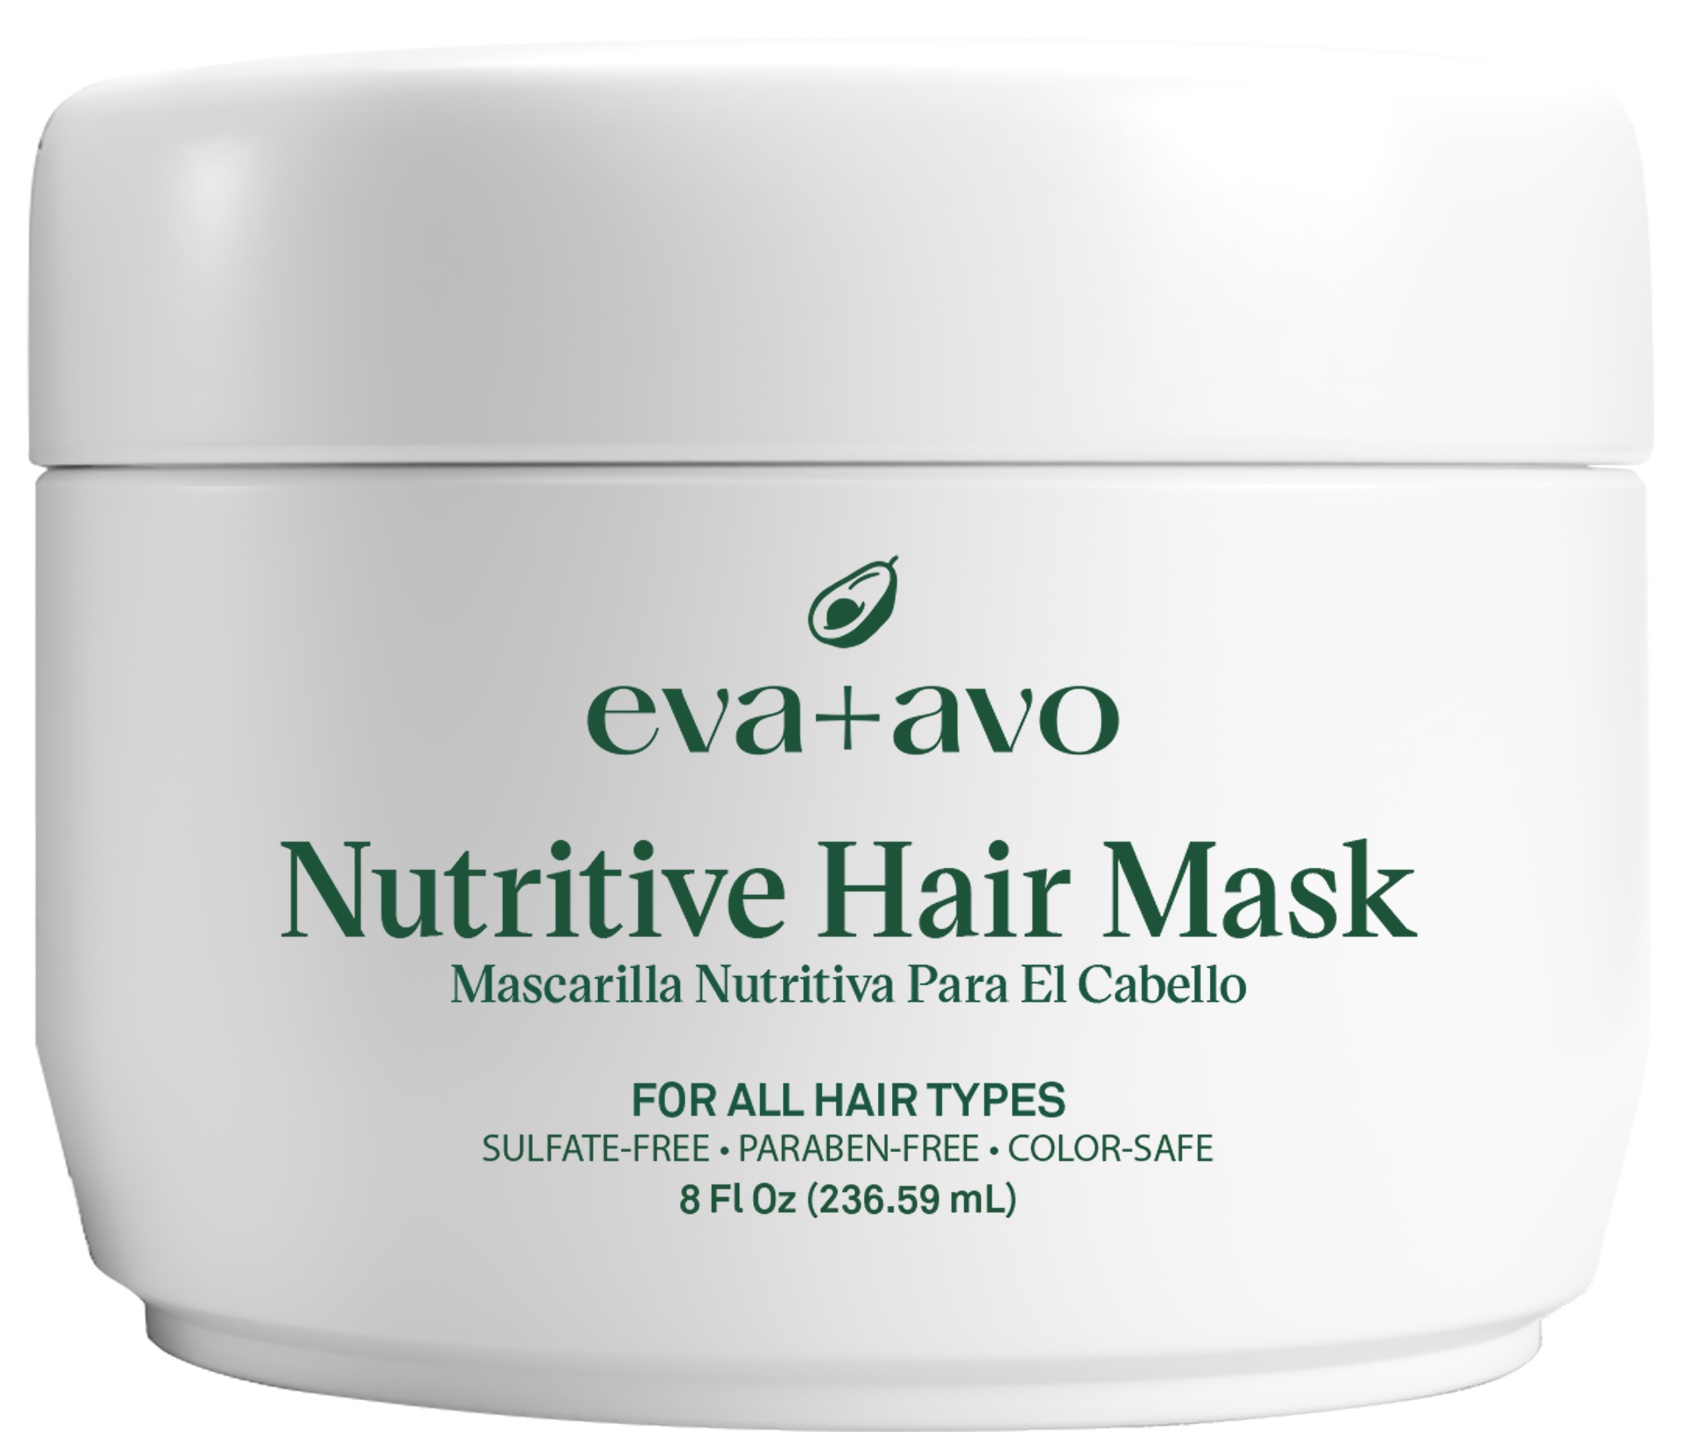 Eva + Avo Nutritive Hair Mask